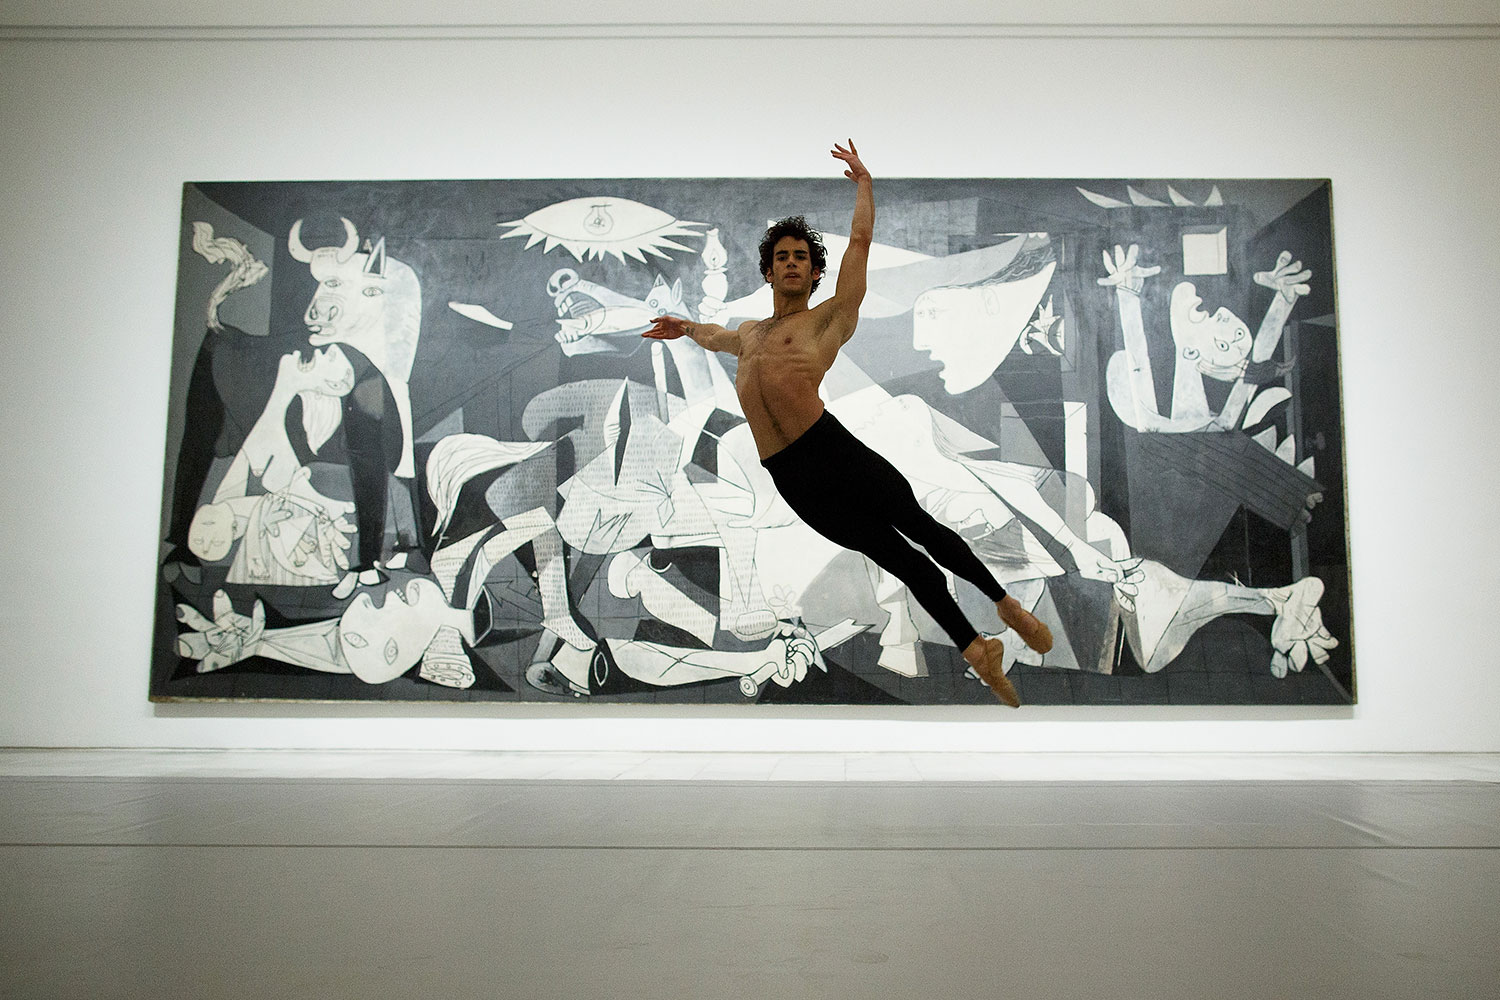 Josué Ullate "bailará" las escenas del mítico "Guernica" de Picasso en el Museo Reina Sofía